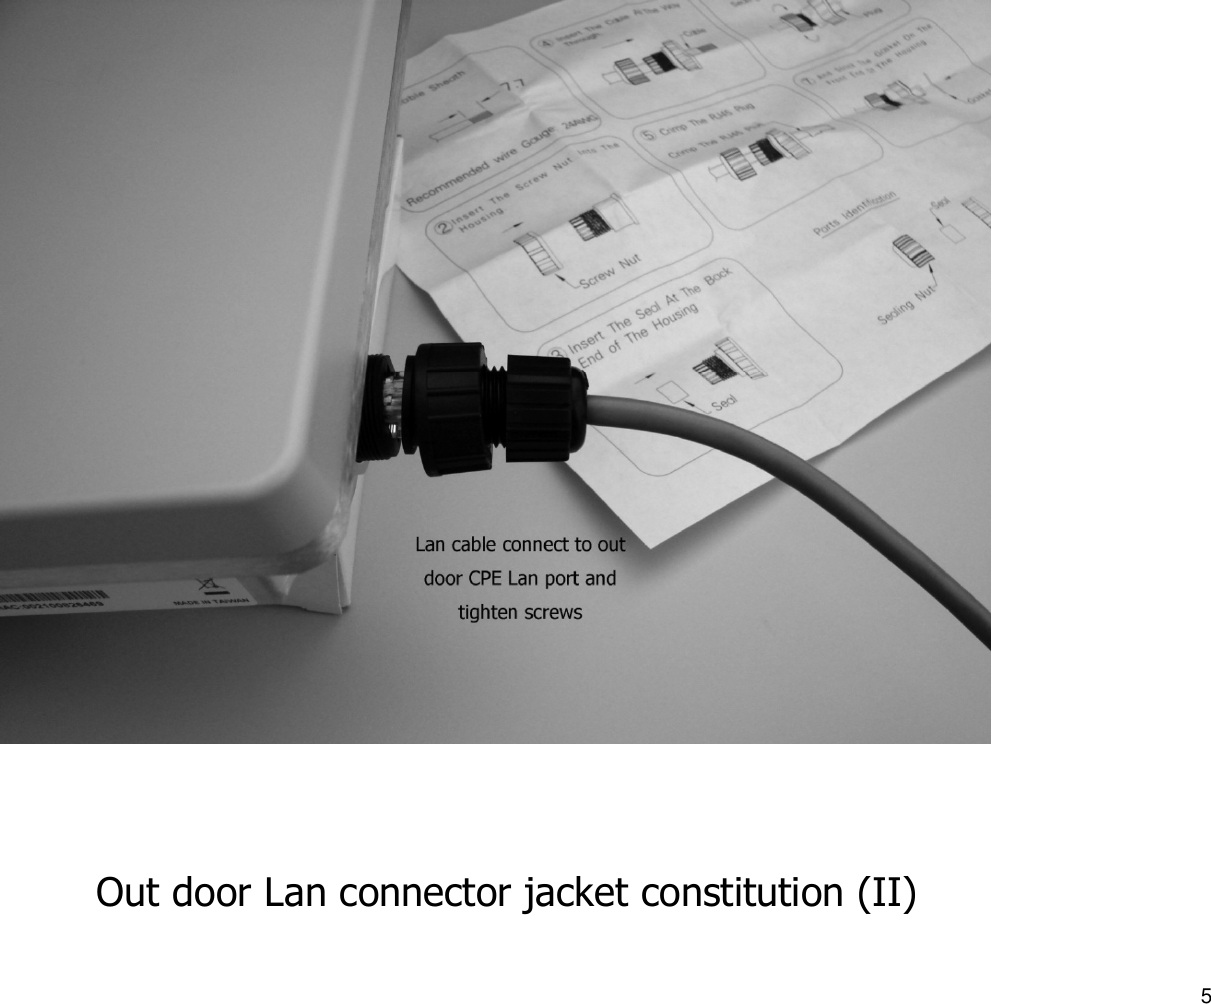 Out door Lan connector jacket constitution (II)5